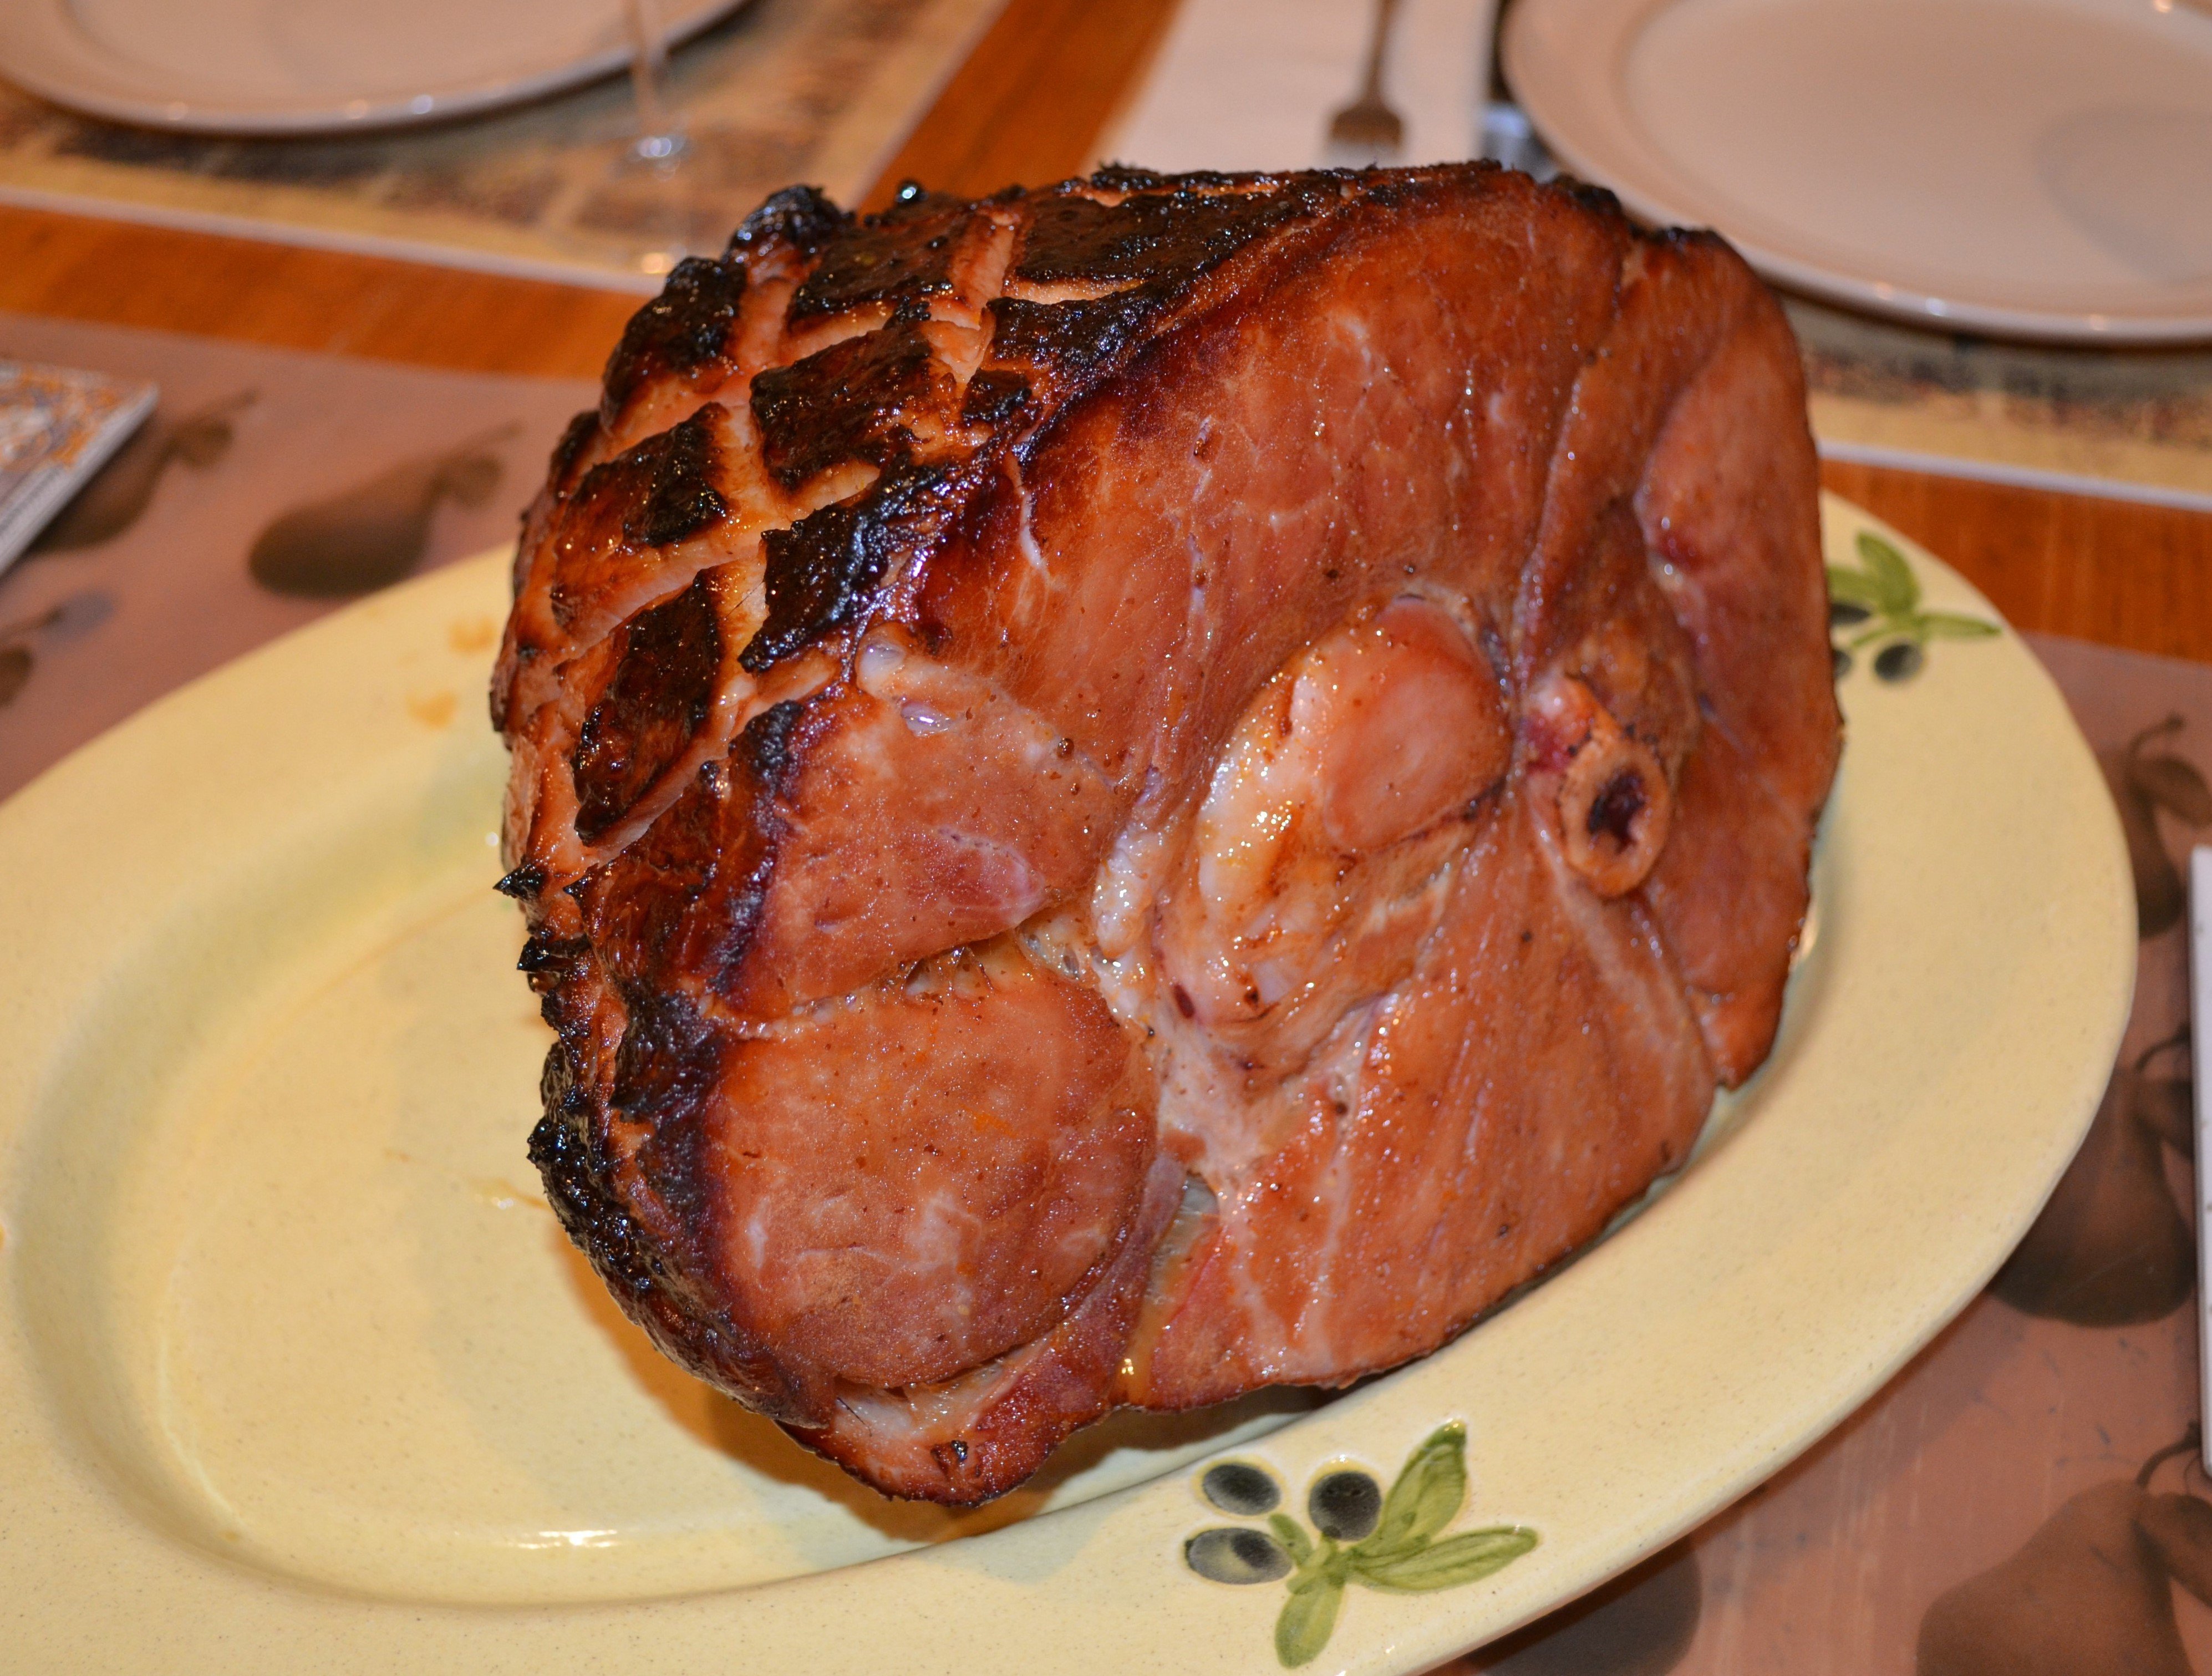 Рецепт свиного окорока в духовке в фольге